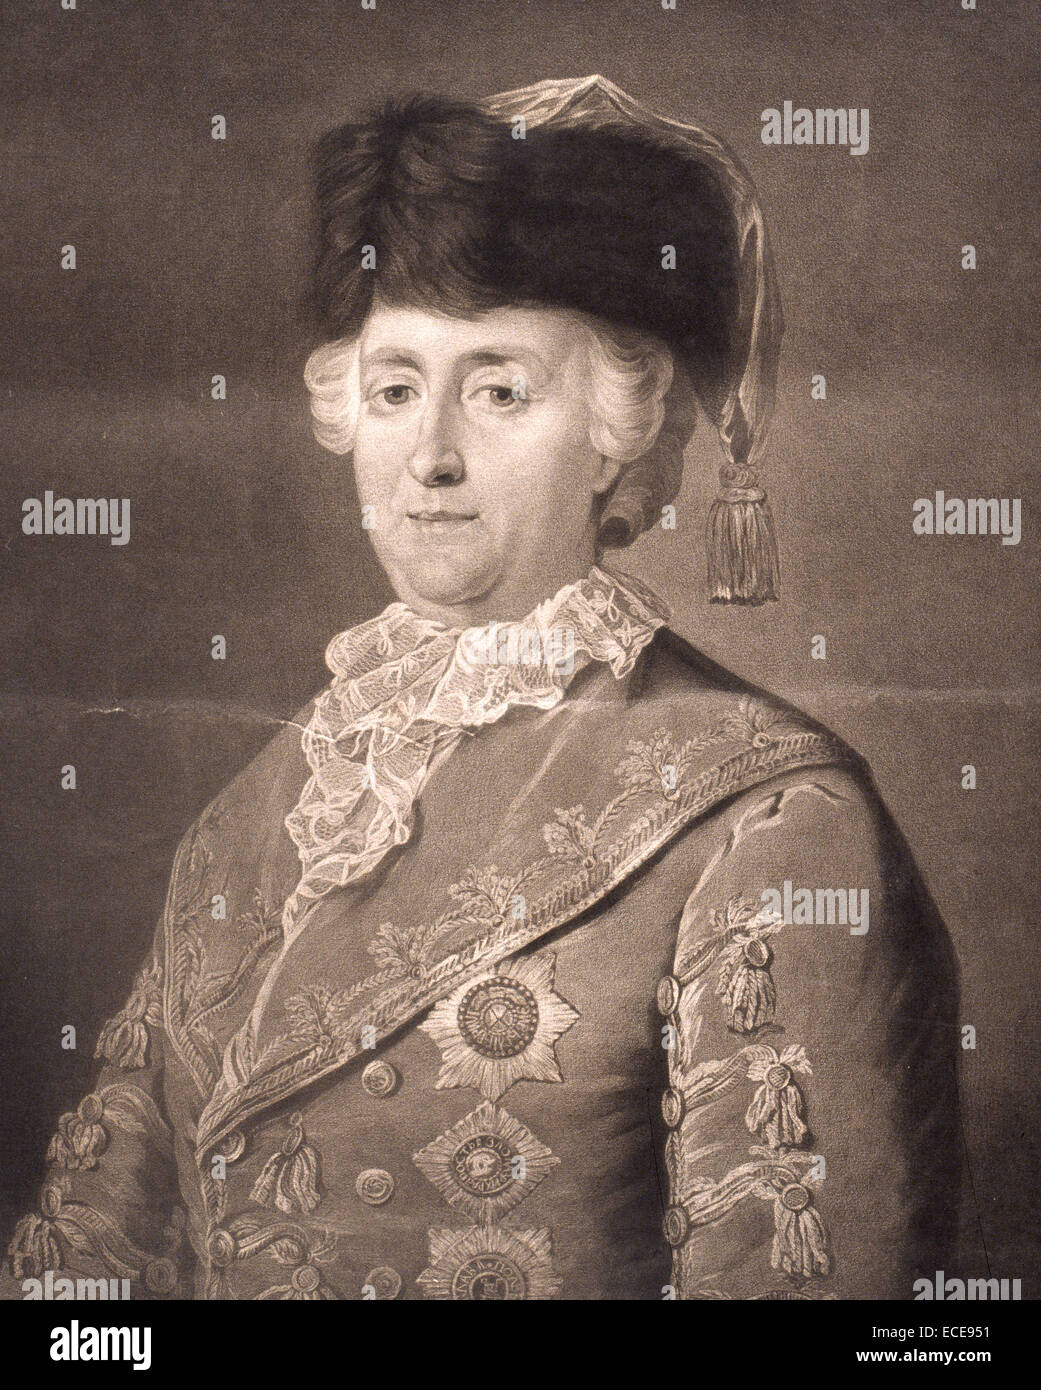 Porträt von Catherine II, auch bekannt als Katharina die große (1729 – 1796).  Katharina II. war der renommiertesten und der am längsten regierende weibliche Führer Russlands, amtierende vom Juli 1762 bis zu ihrem Tod im Jahre 1796 im Alter von 67. Stockfoto